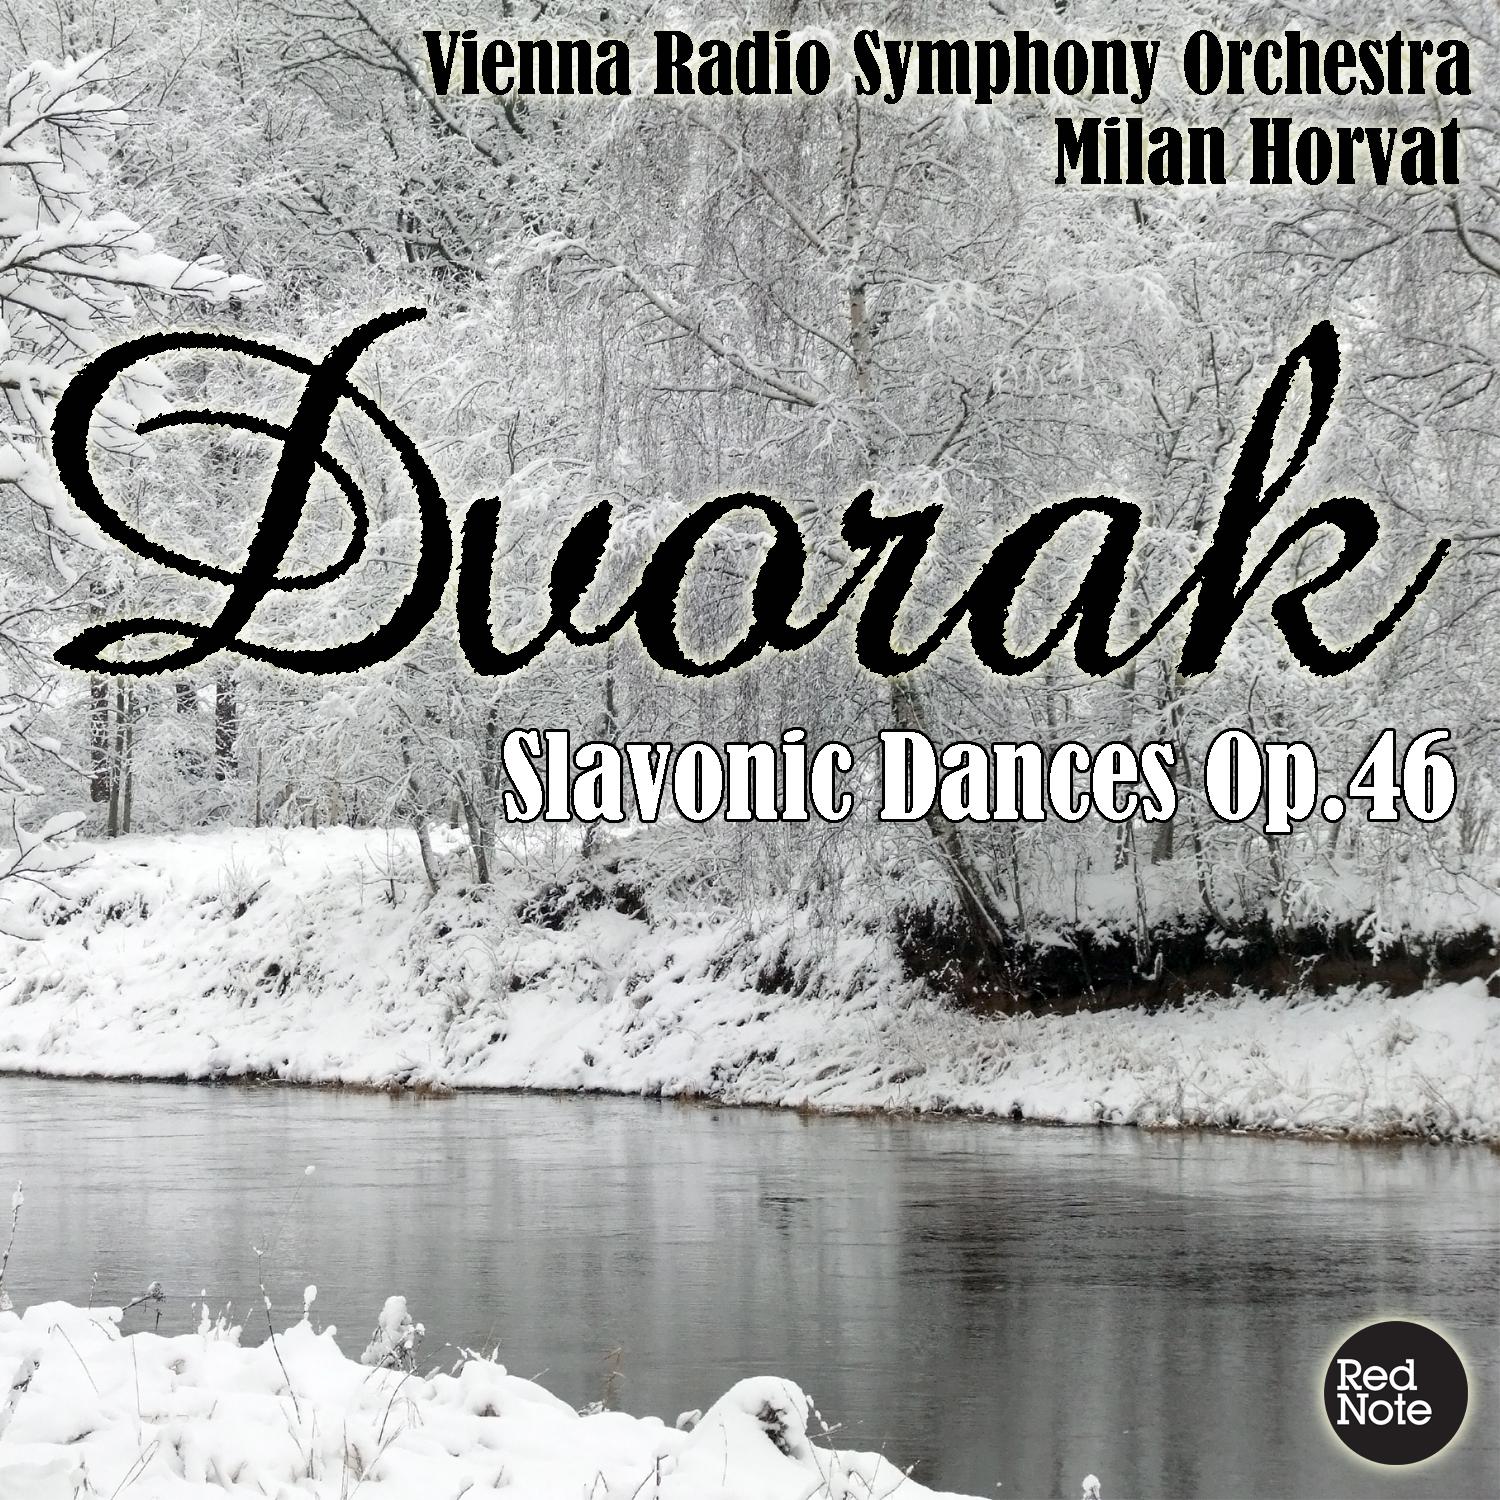 Slavonic Dances in A Major, Op.46: No.5 - Allegro vivace